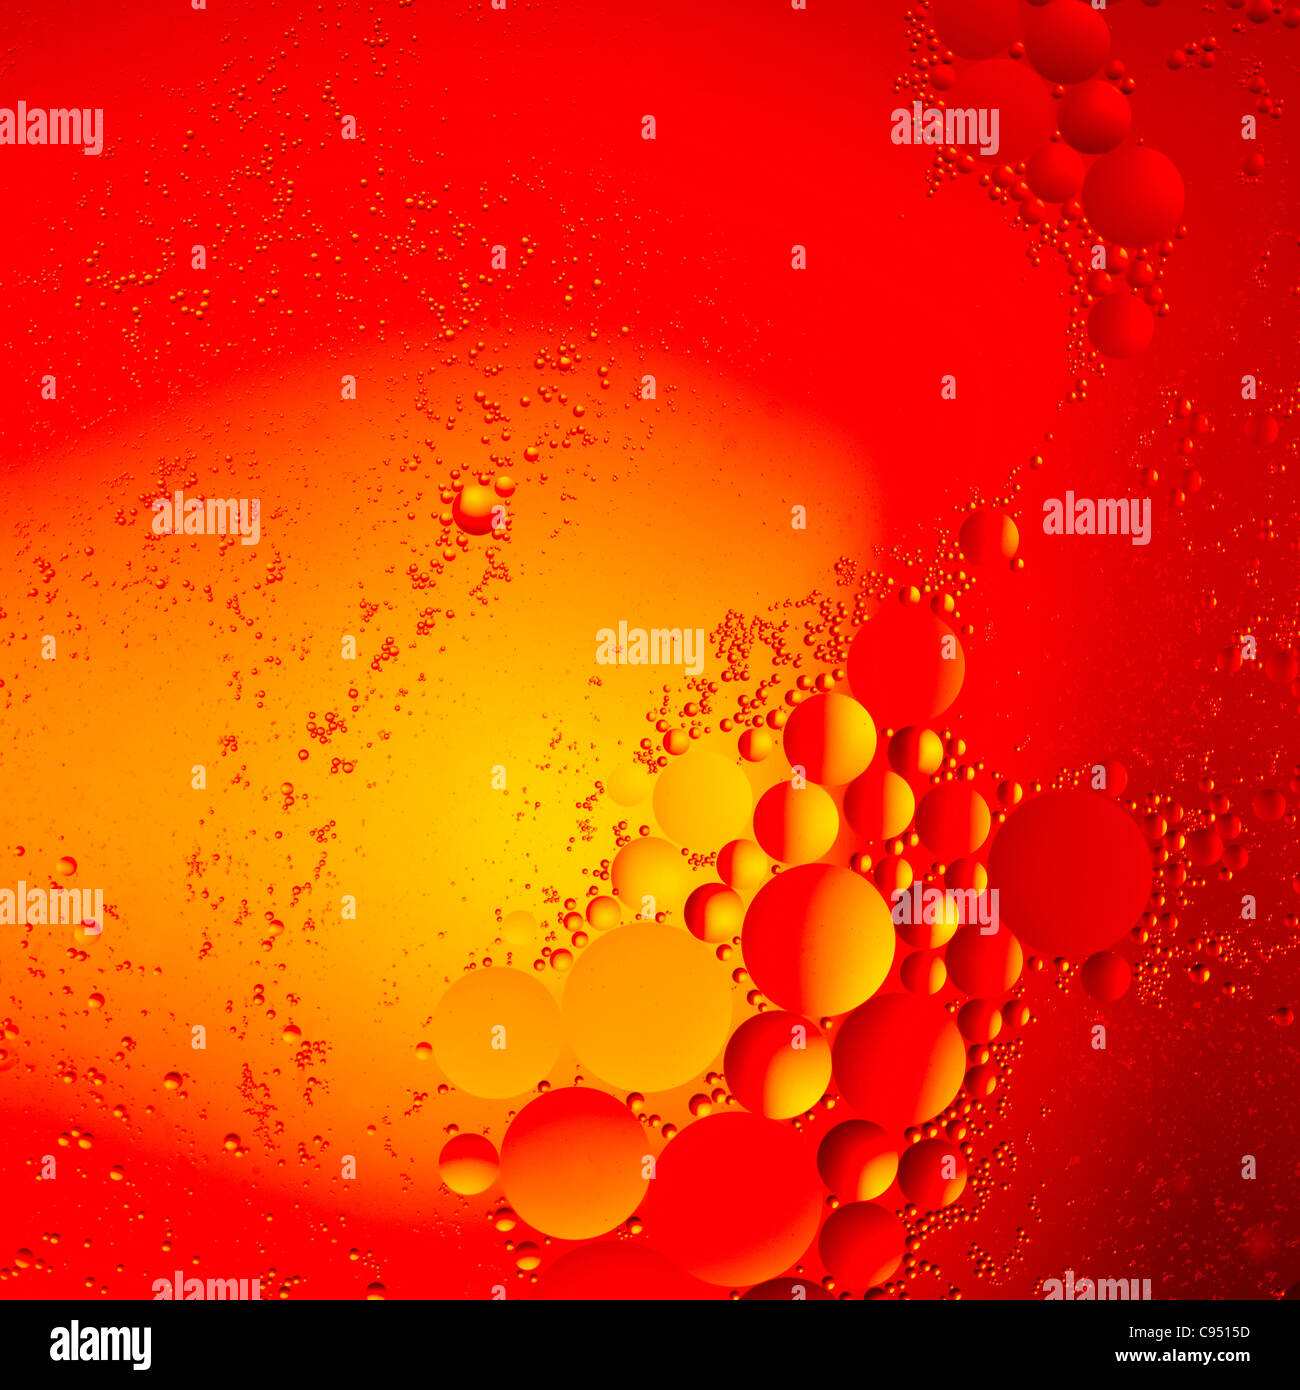 Abstract-Oil scende in acqua Foto Stock